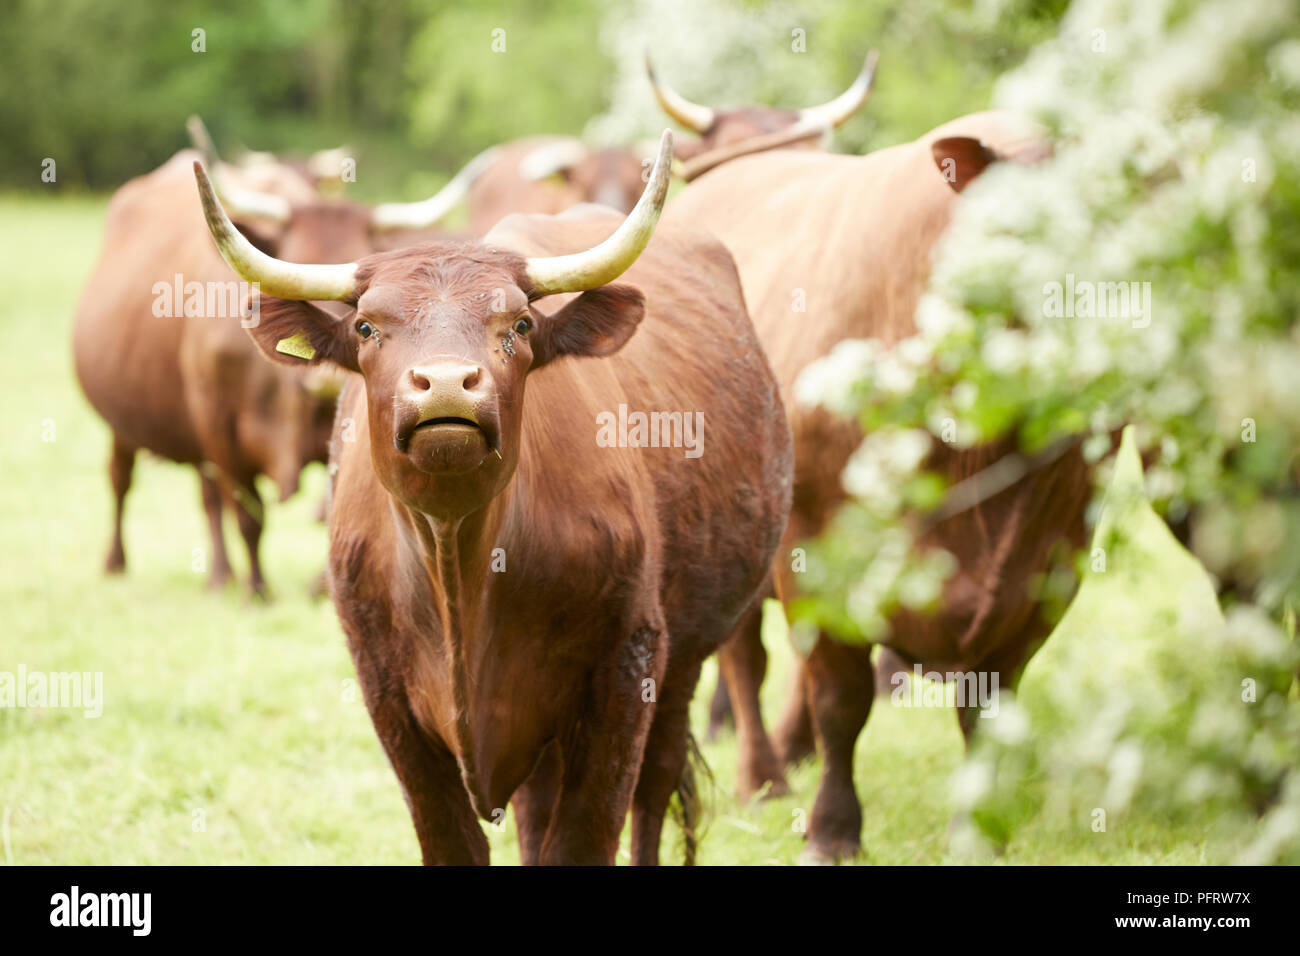 Horned cattle Stock Photo